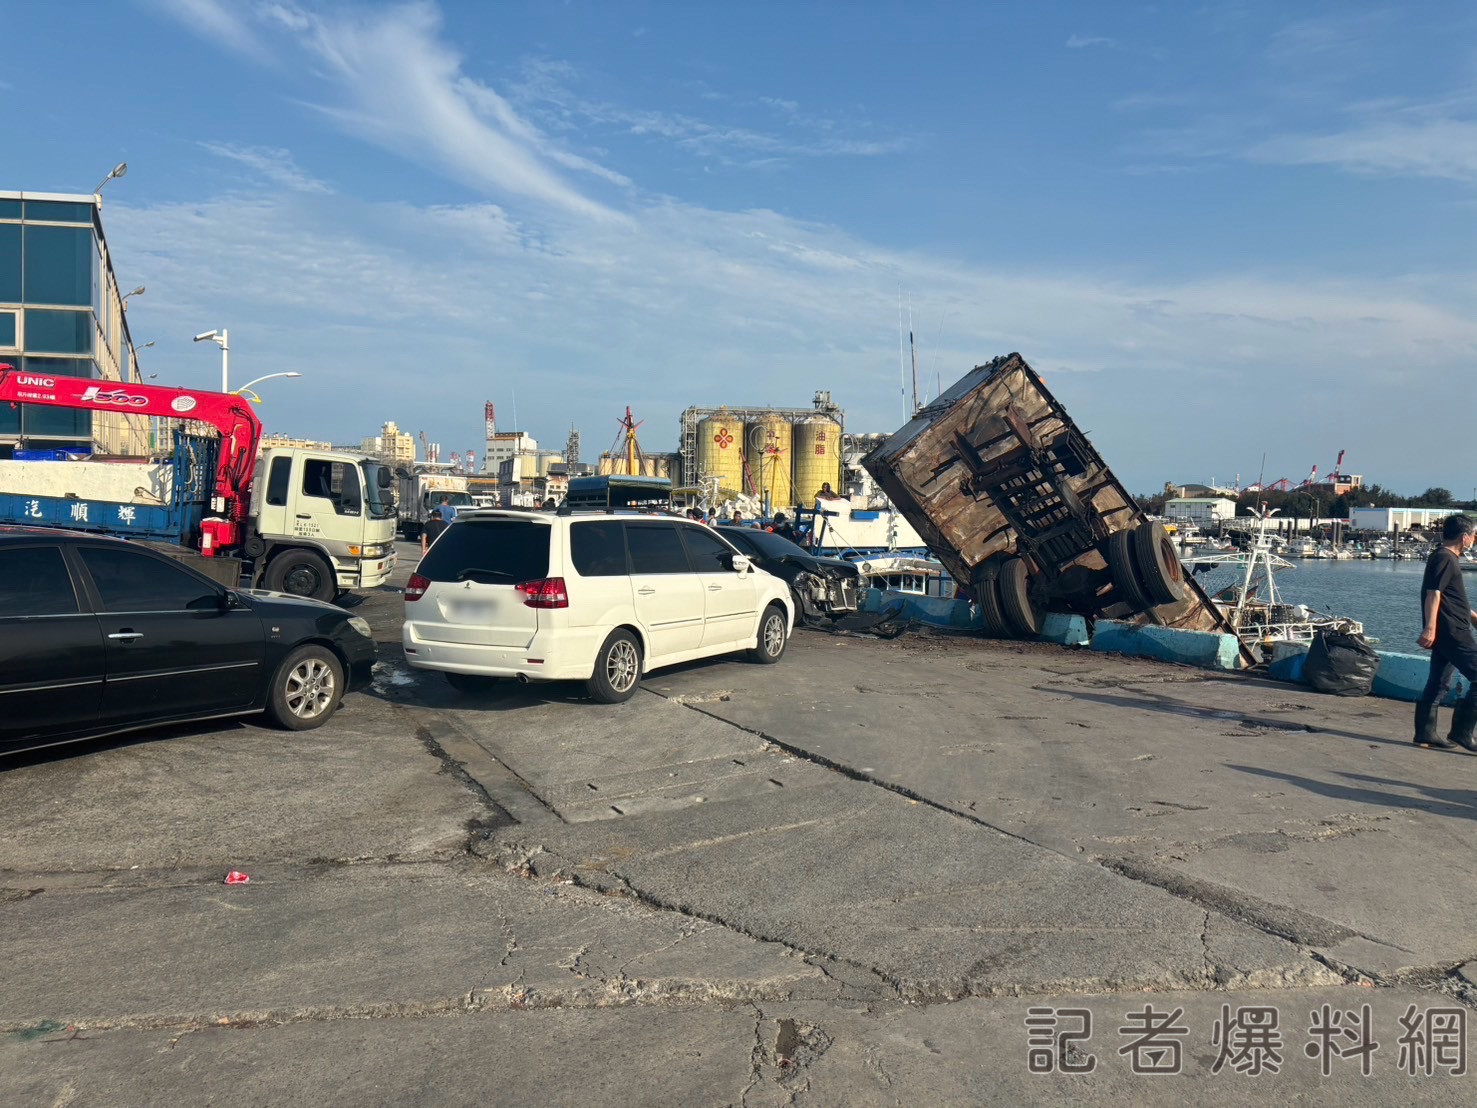 梧棲漁港報廢大貨車離奇暴衝 車上菲律賓籍男子受傷送醫